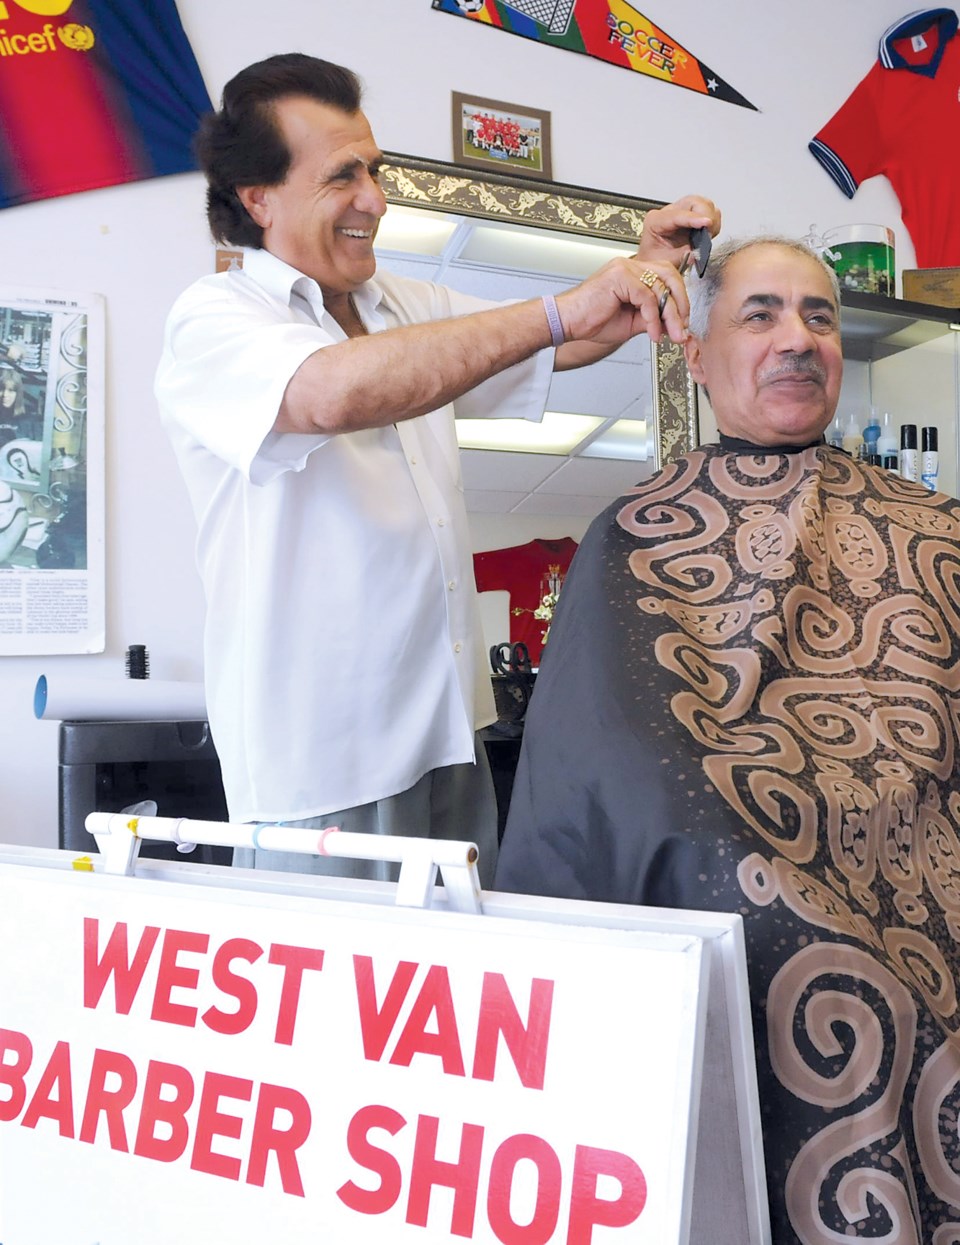 West Van Barber Shop